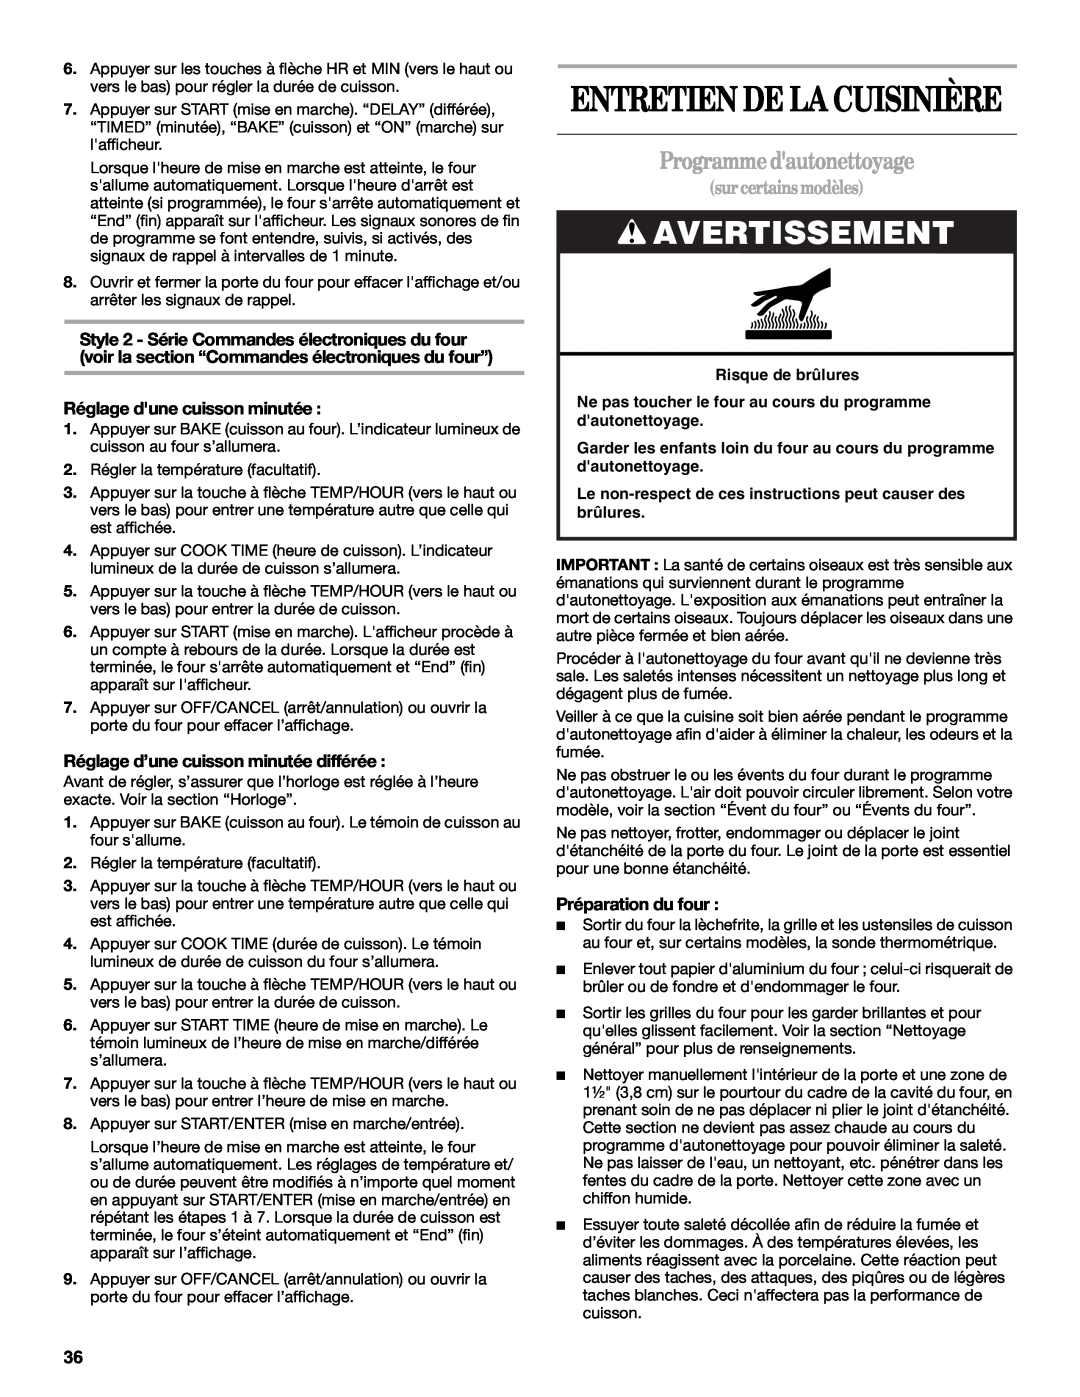 Whirlpool W10162212A manual Entretien De La Cuisinière, Programmedautonettoyage, Avertissement, surcertainsmodèles 